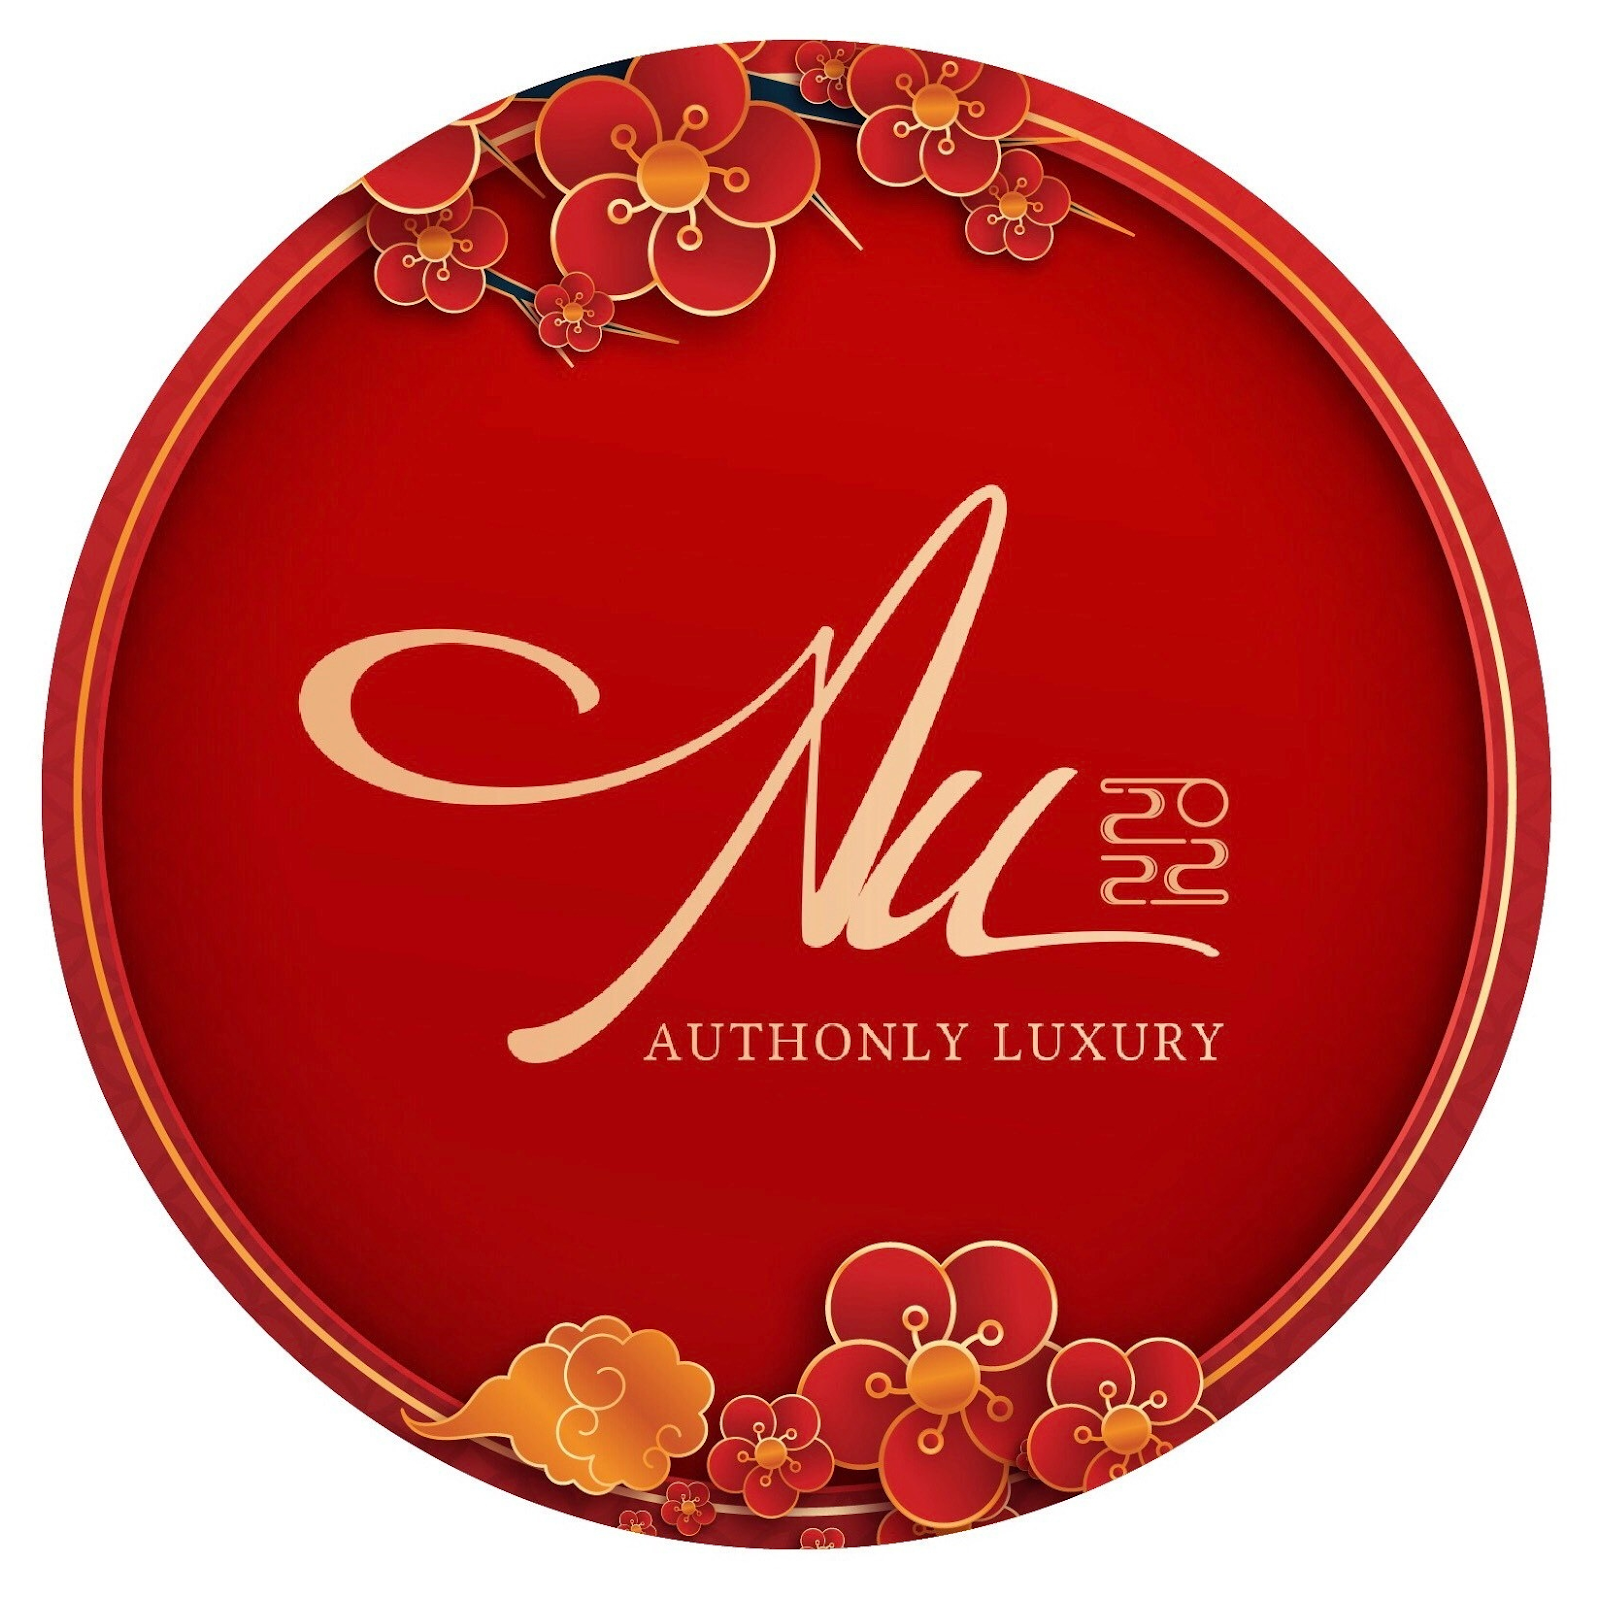 Authonly là thương hiệu cung cấp đồ da hiệu hàng đầu Hà Nội